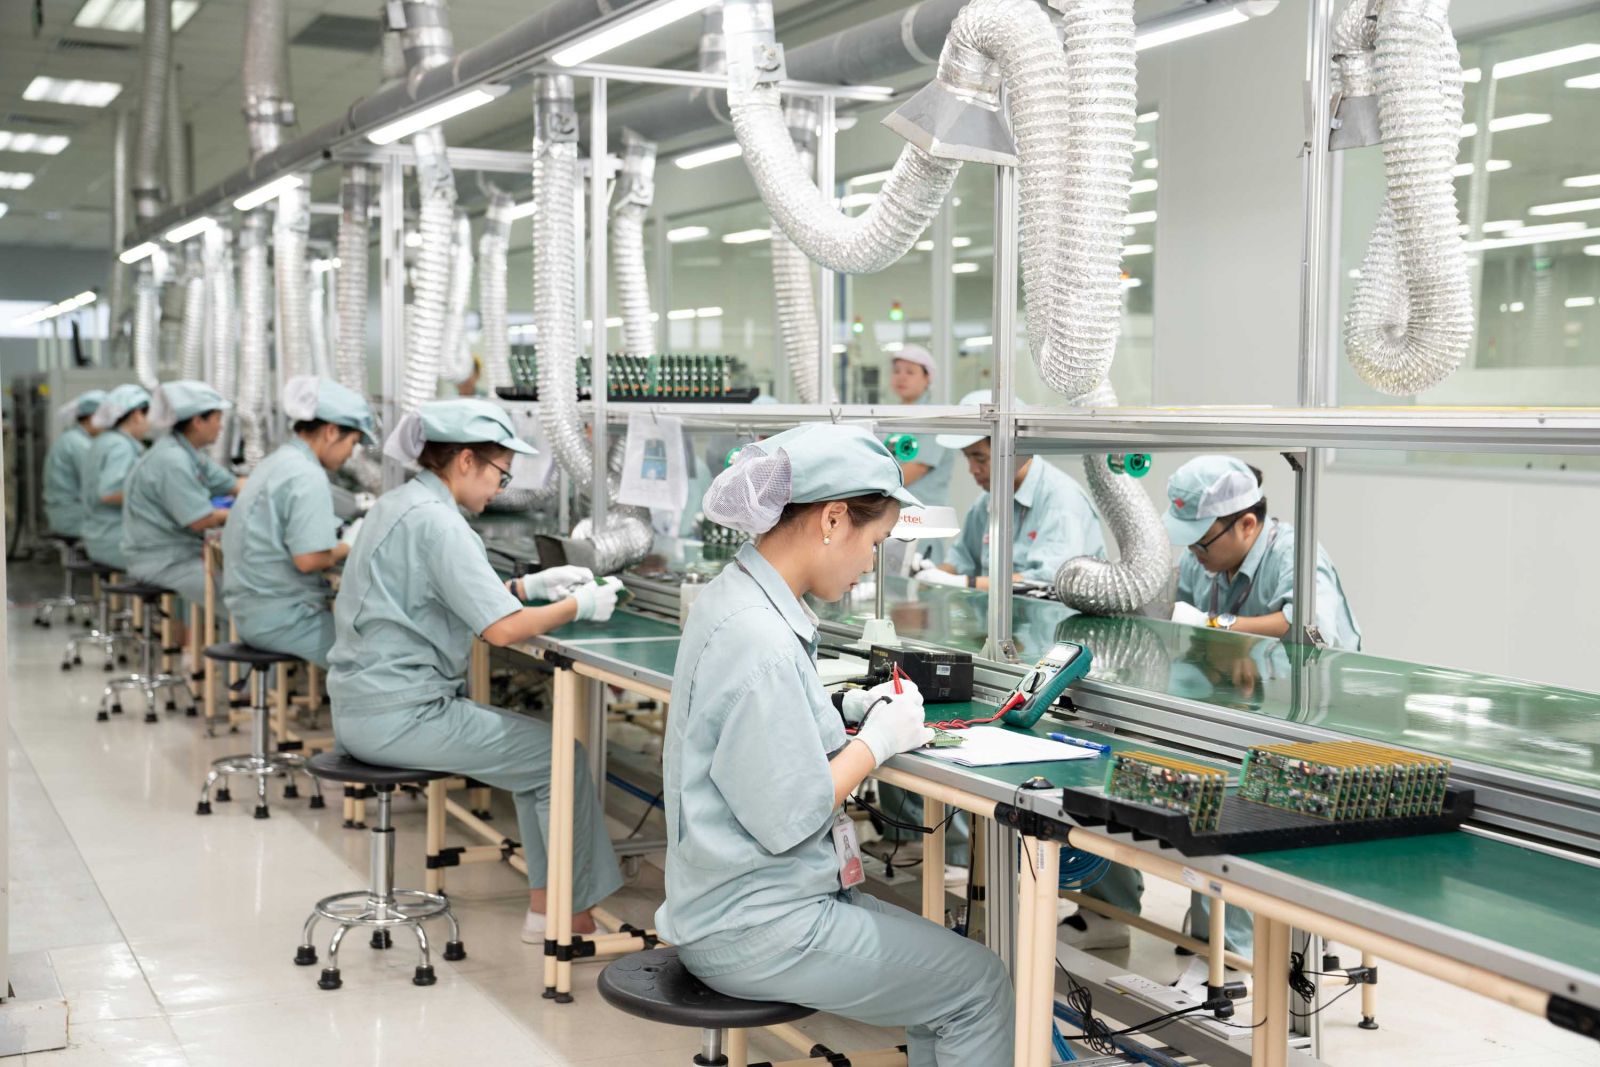 Cty con của Viettel là VMC cùng sản xuất thiết bị với các sản phẩm Make in Vietnam công nghệ cao thuộc các lĩnh vực cơ khí, điện tử, mô hình mô phỏng,